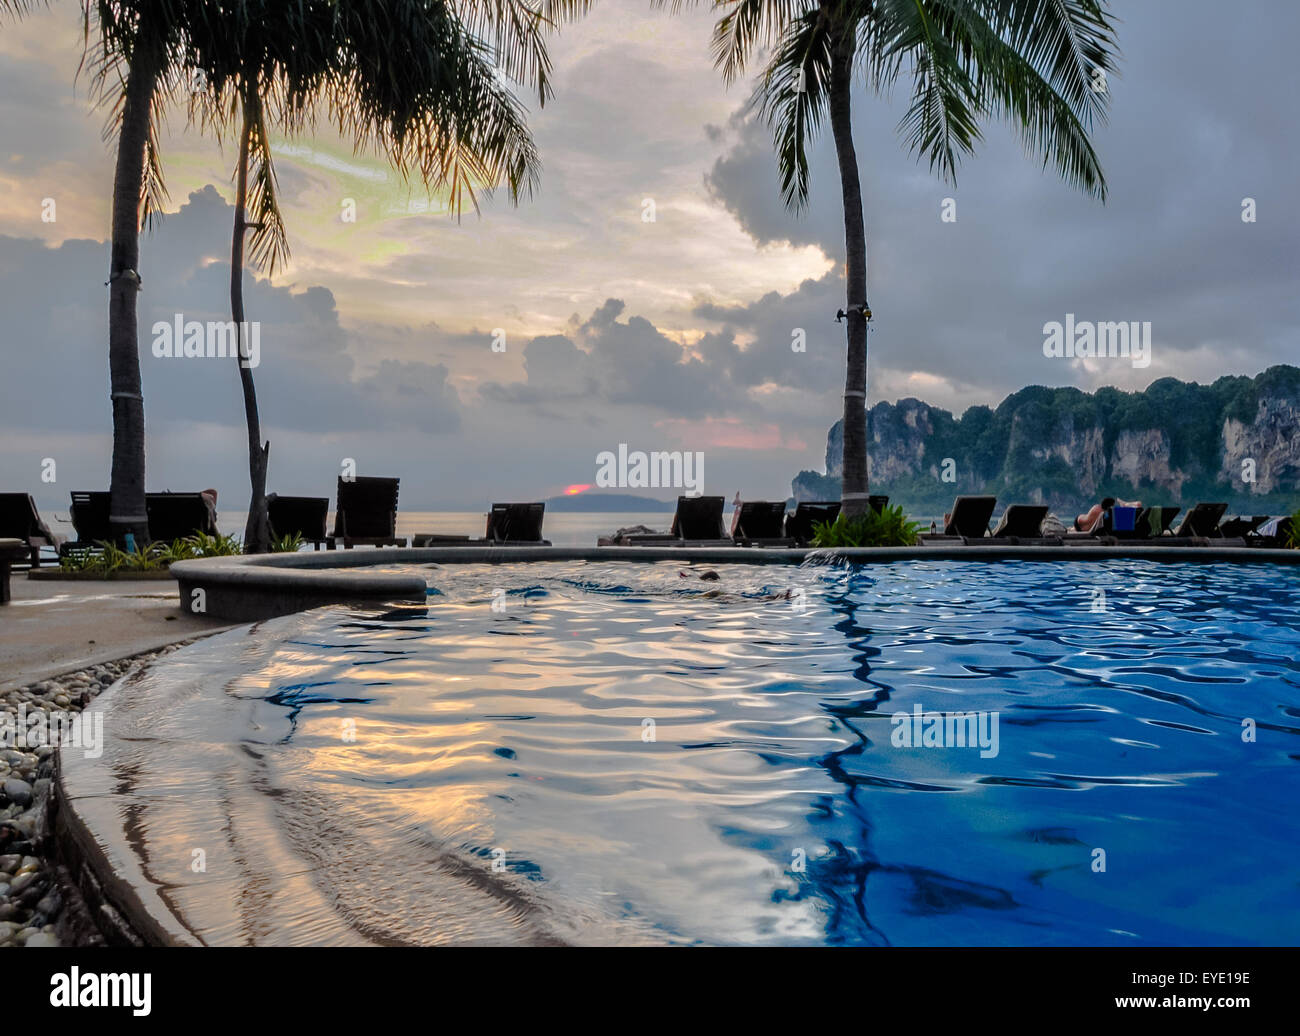 Swimming pool on Krabi railay beach, Thailand, Asia. Stock Photo